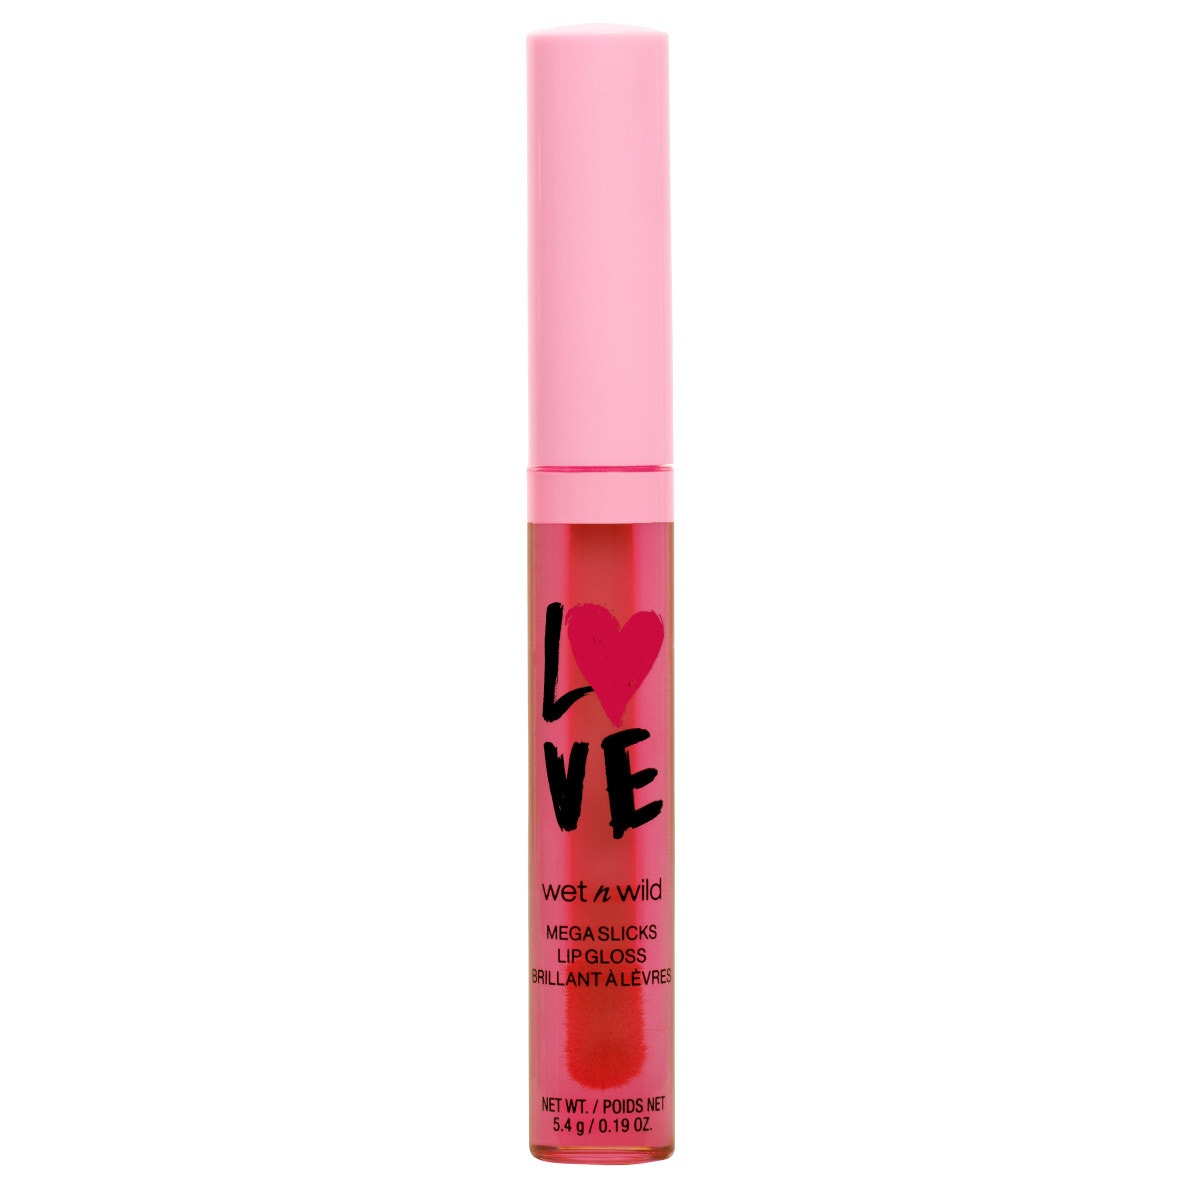 Wet n Wild - Valentine's Mega Slicks Lip Gloss Sun Glaze